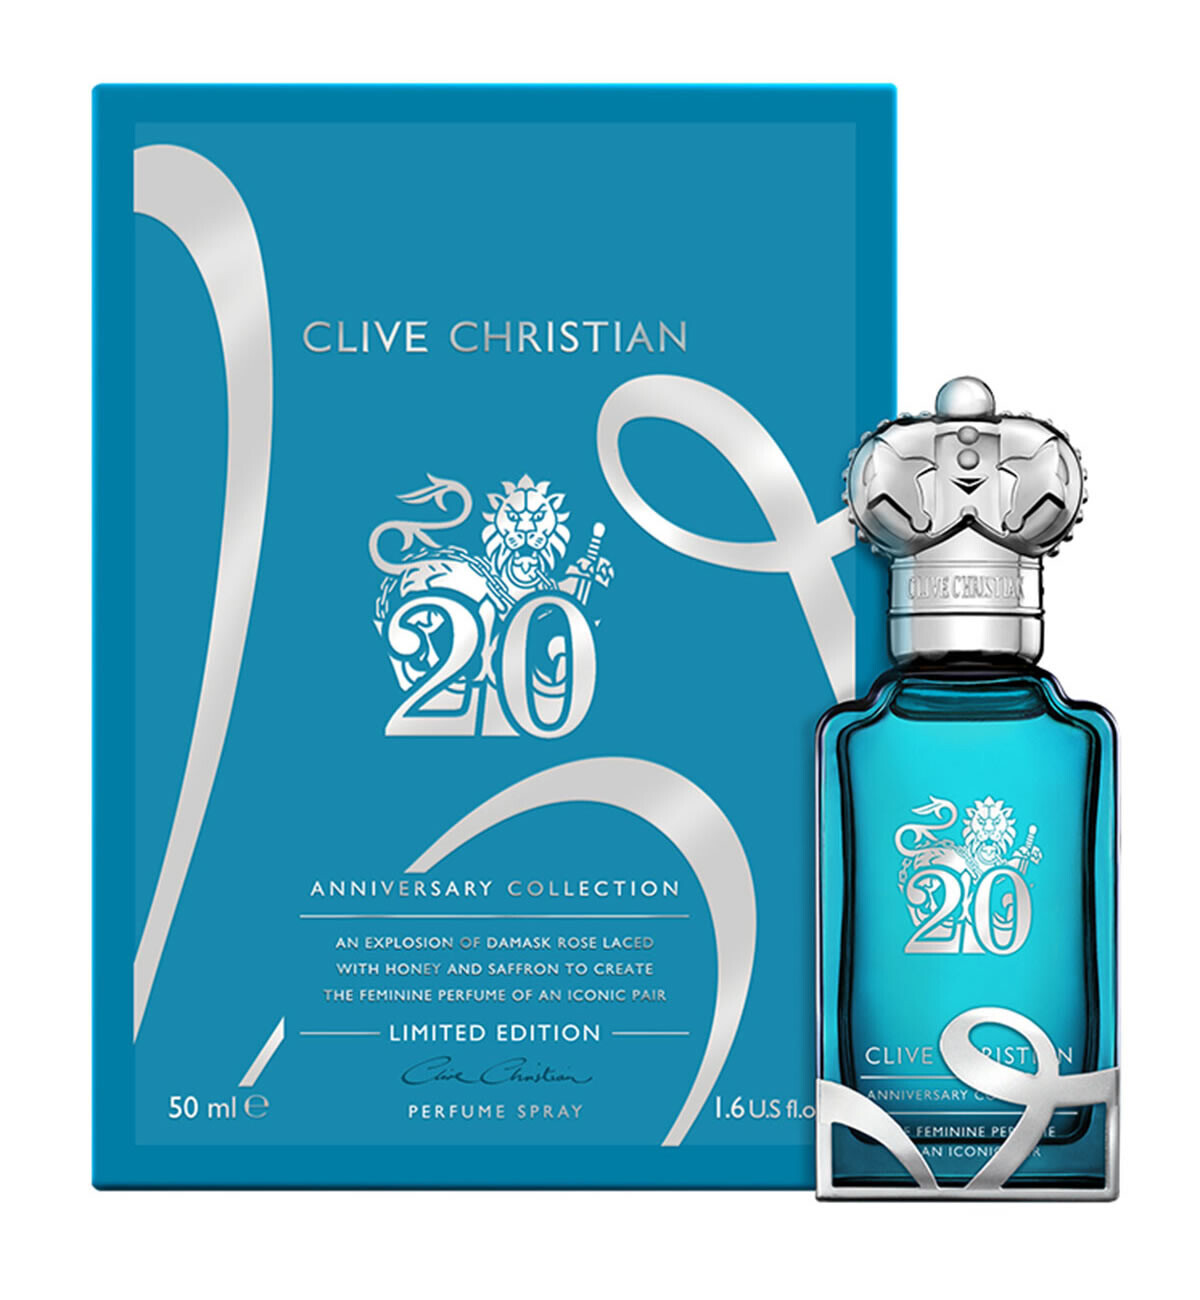 Духи Clive Christian 20 Iconic Feminine для женщин 50 мл the feminine perfume of an iconic pair 20 духи 50мл